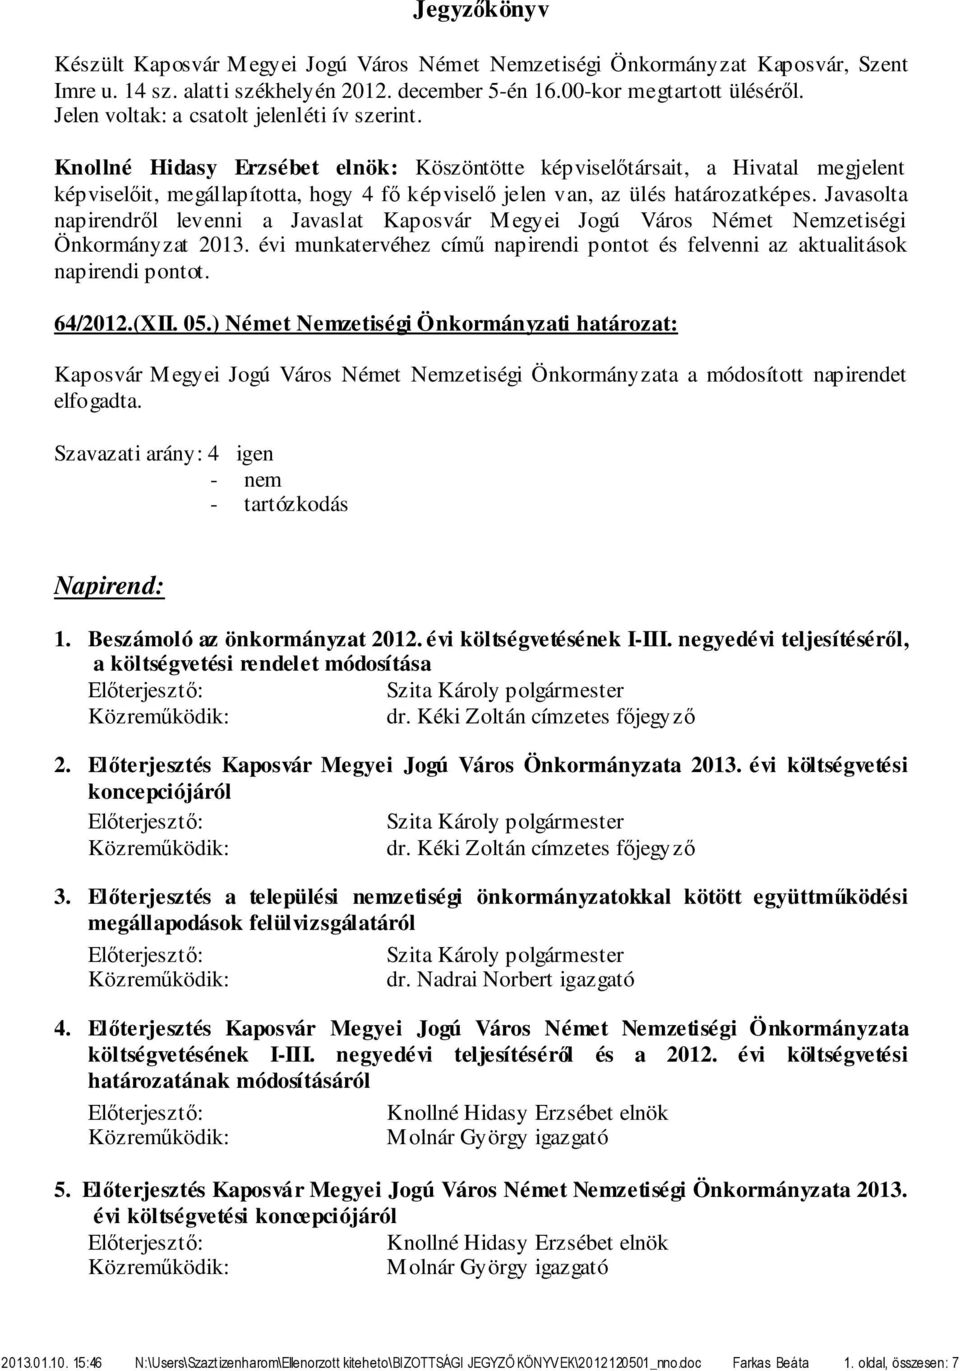 Javasolta napirendről levenni a Javaslat Kaposvár Megyei Jogú Város Német Nemzetiségi Önkormányzat 2013. évi munkatervéhez című napirendi pontot és felvenni az aktualitások napirendi pontot. 64/2012.